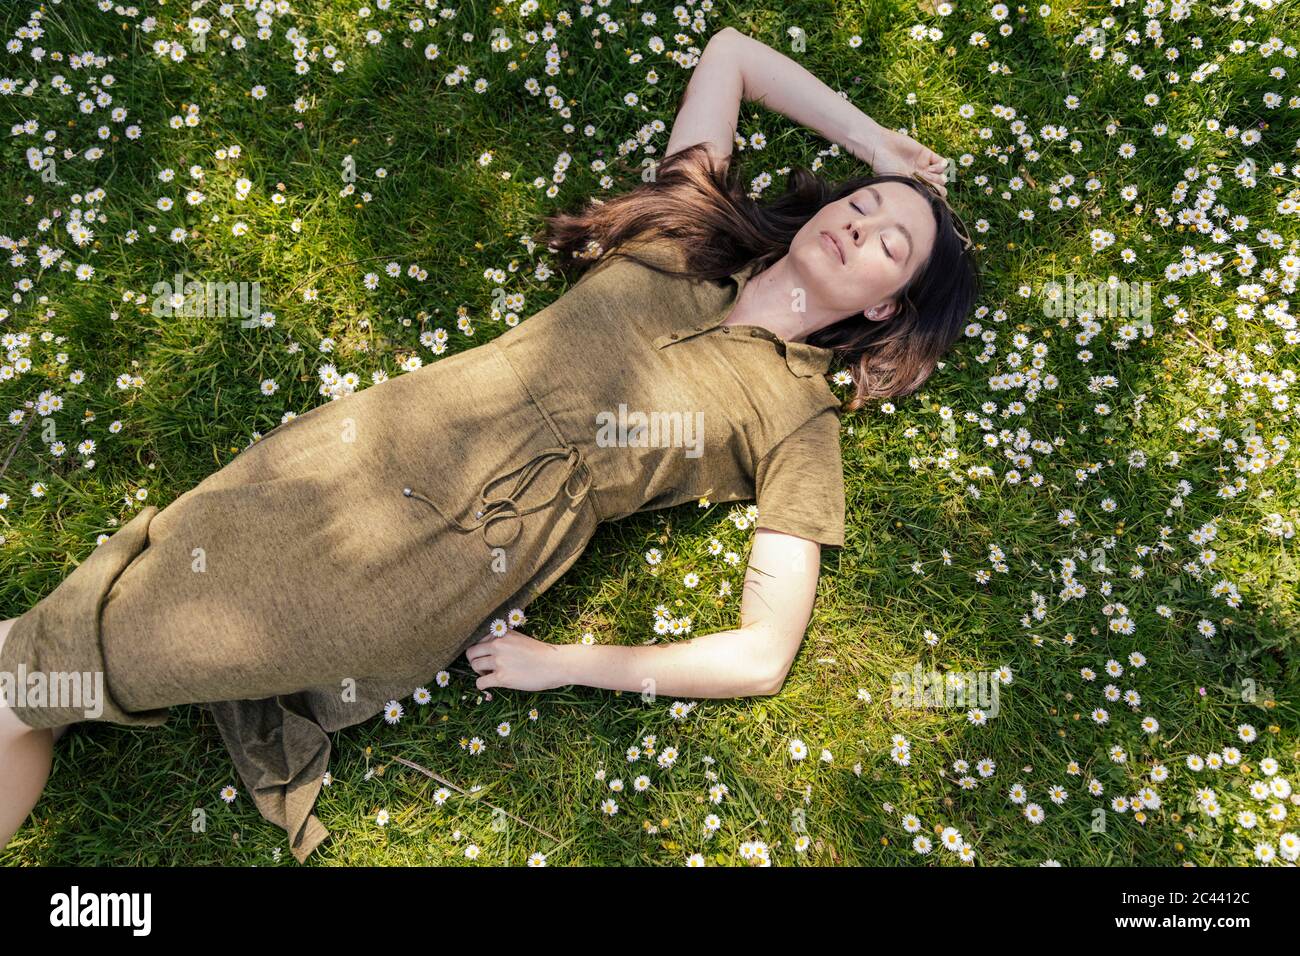 Femme appréciant son temps libre en étant couché sur l'herbe avec des pâquerettes Banque D'Images